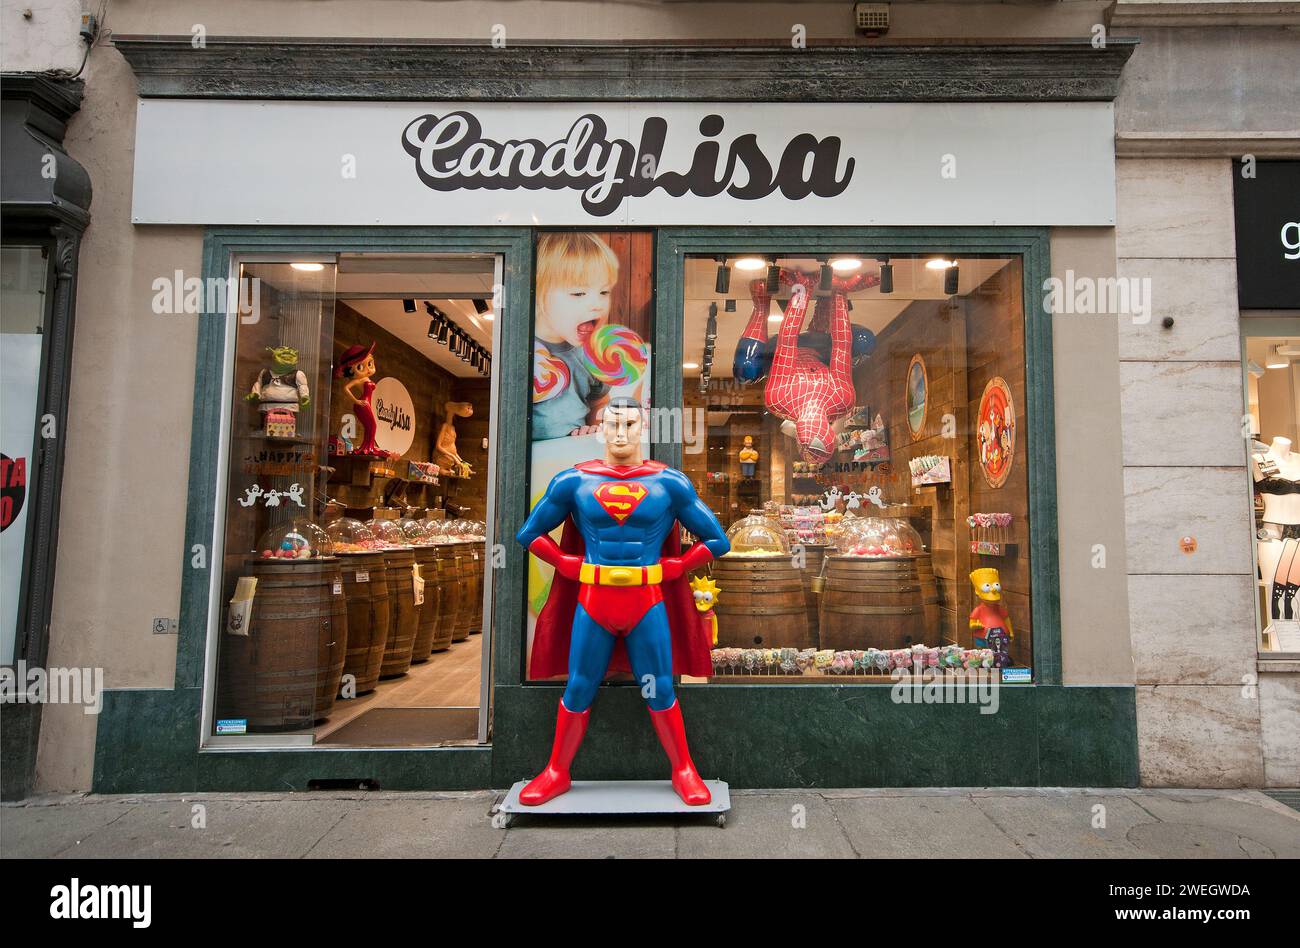 Negozio Candy Lisa con grandi statue di Superman (all'esterno) e Spiderman (all'interno), Torino, Piemonte, Italia Foto Stock